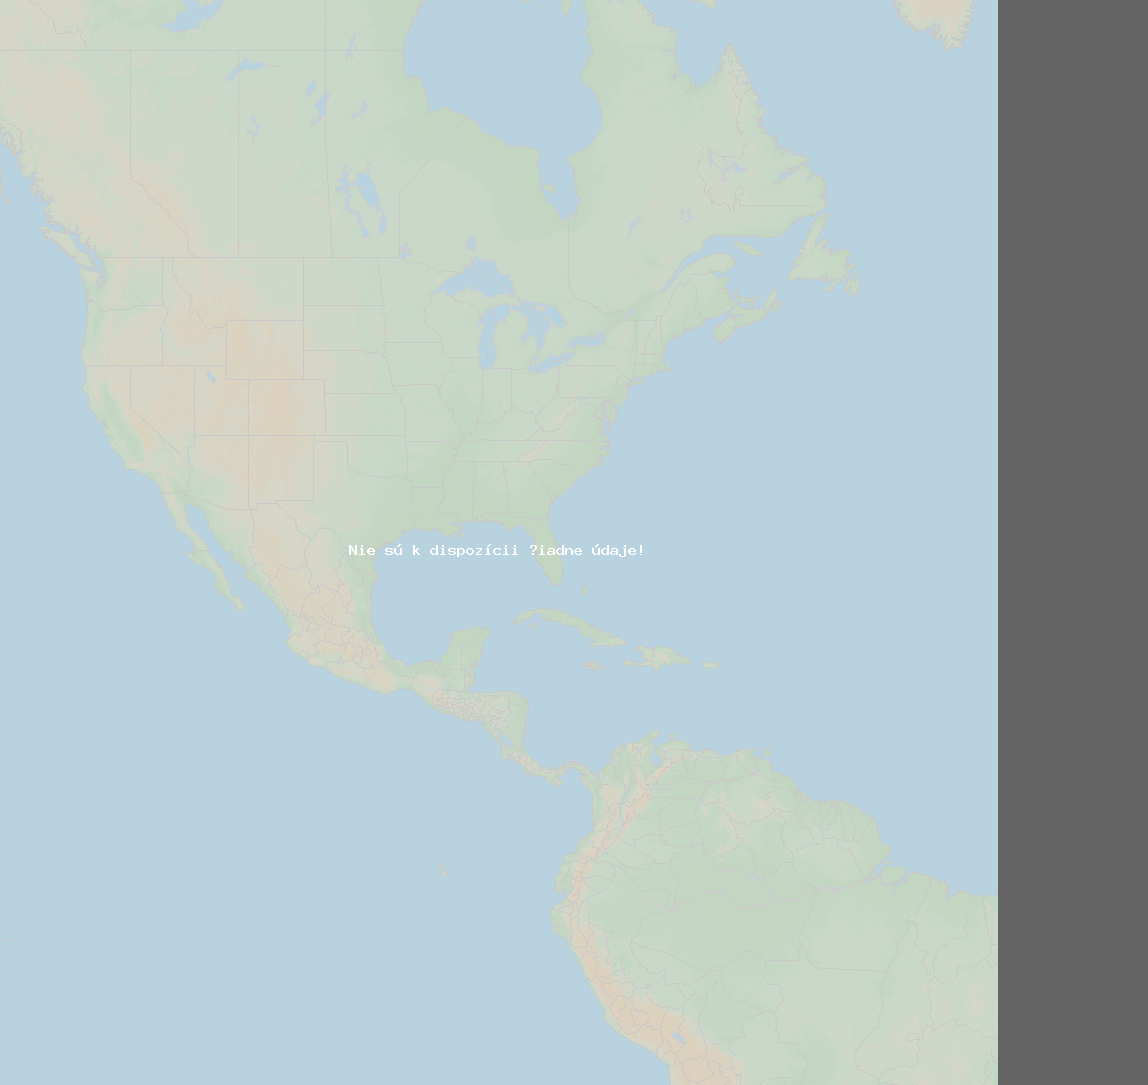 Pomer bleskov (Stanica Baie-Comeau QC) North America 2019 Február